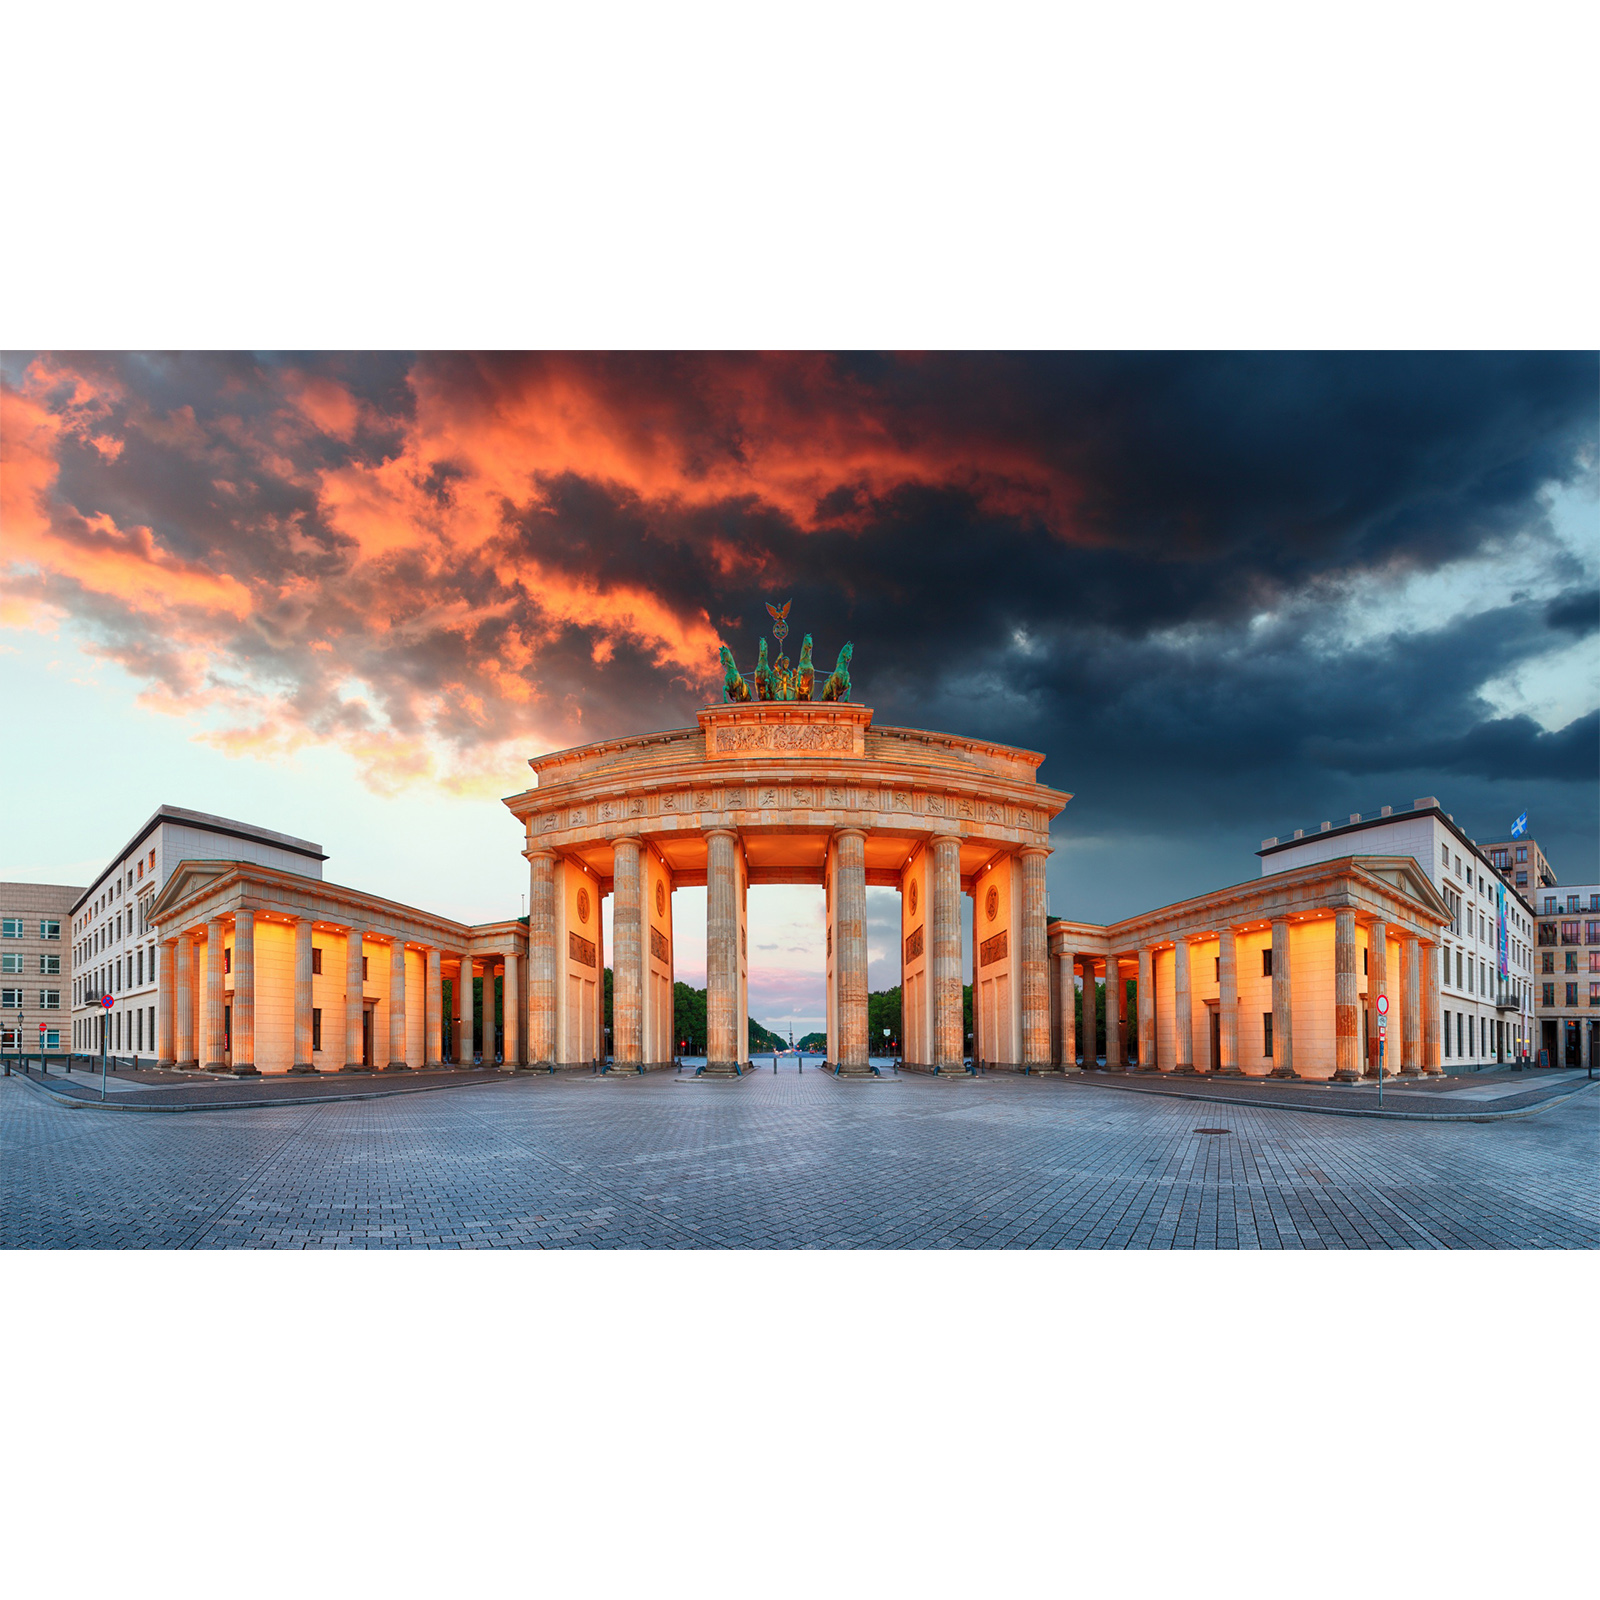 تابلو شاسی سری زیباترین عکس های جهان طرح دروازه ی برندبورگ برلین کد 143